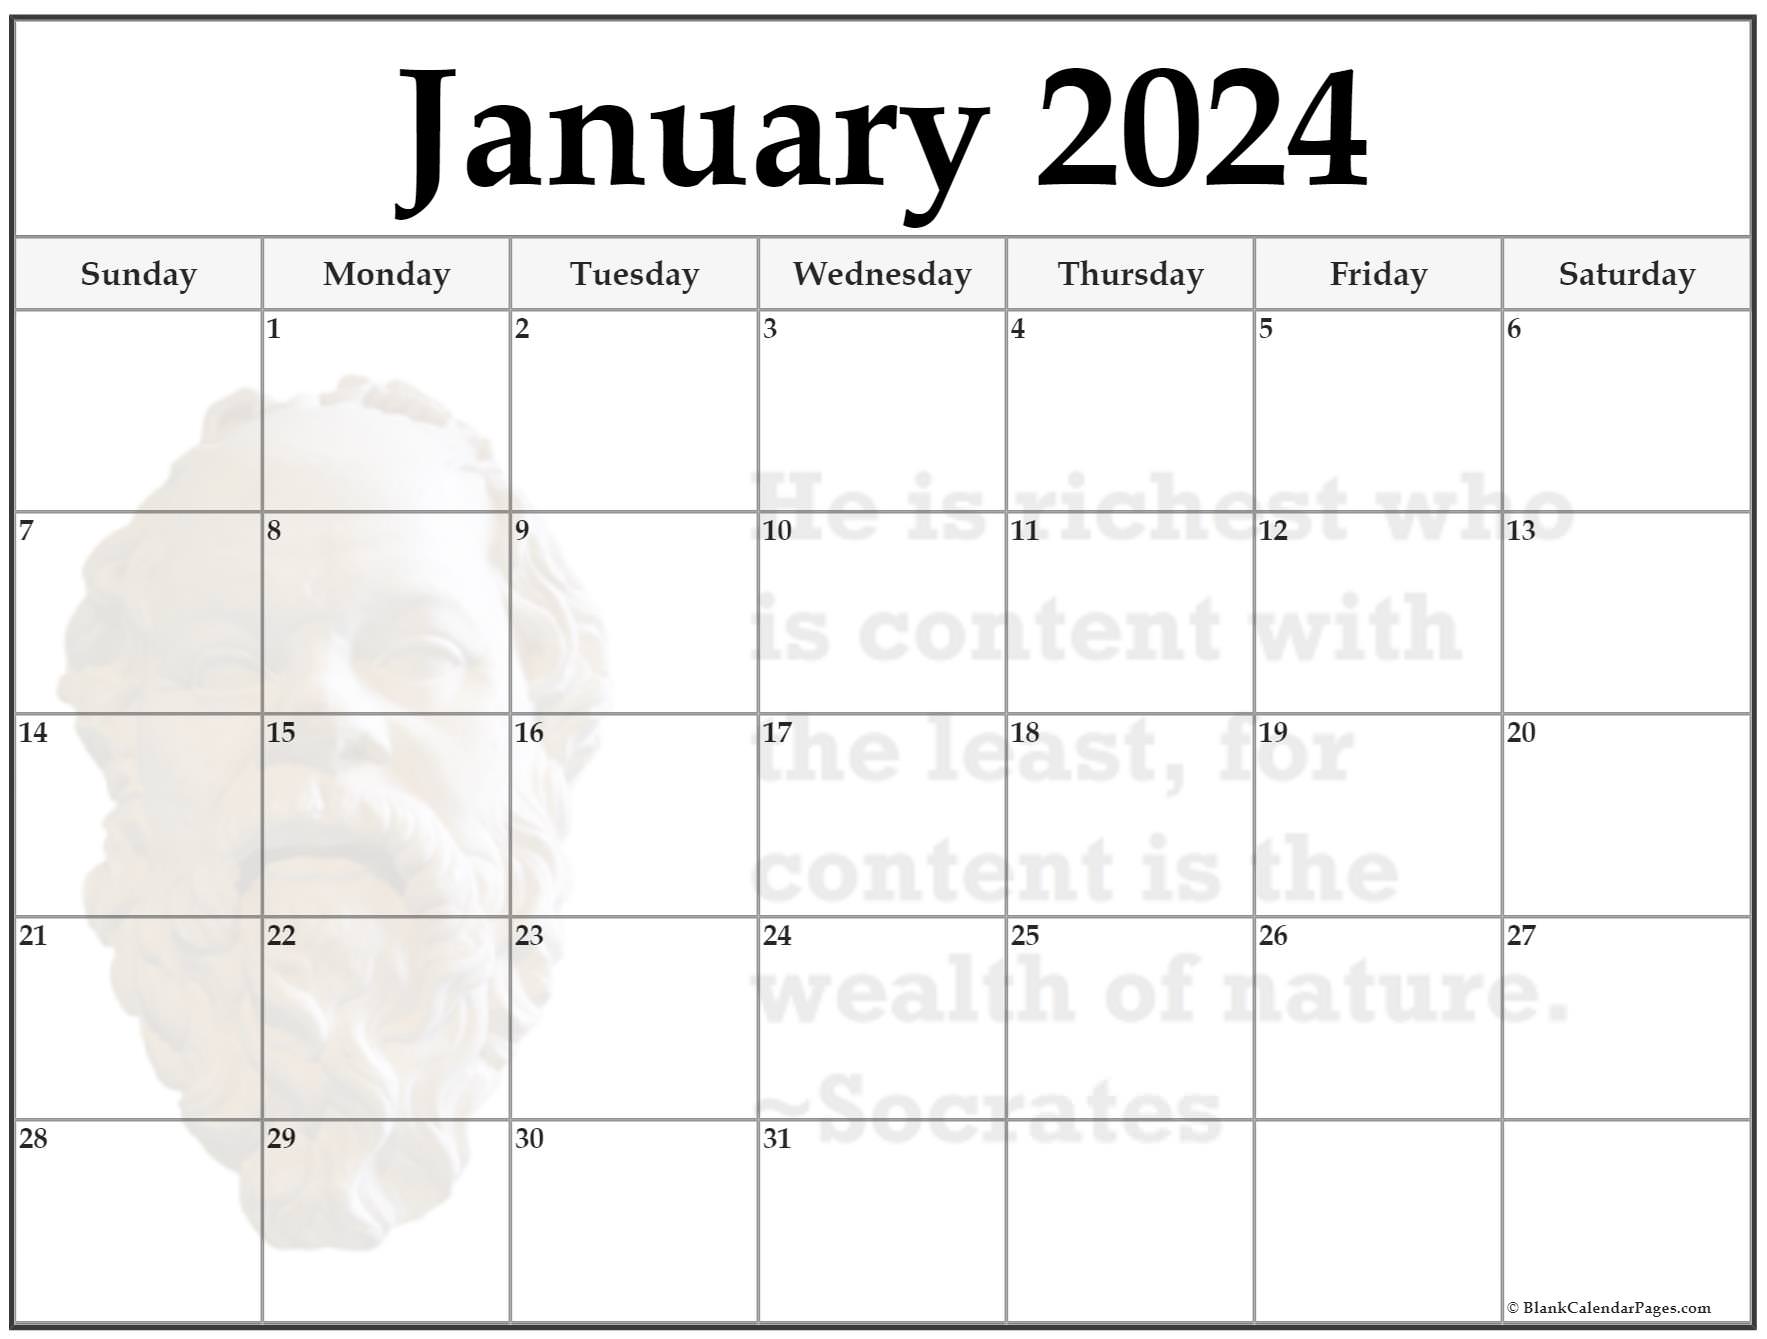 Gemeenten Gasvormig Dronken worden 24+ January 2023 quote calendars